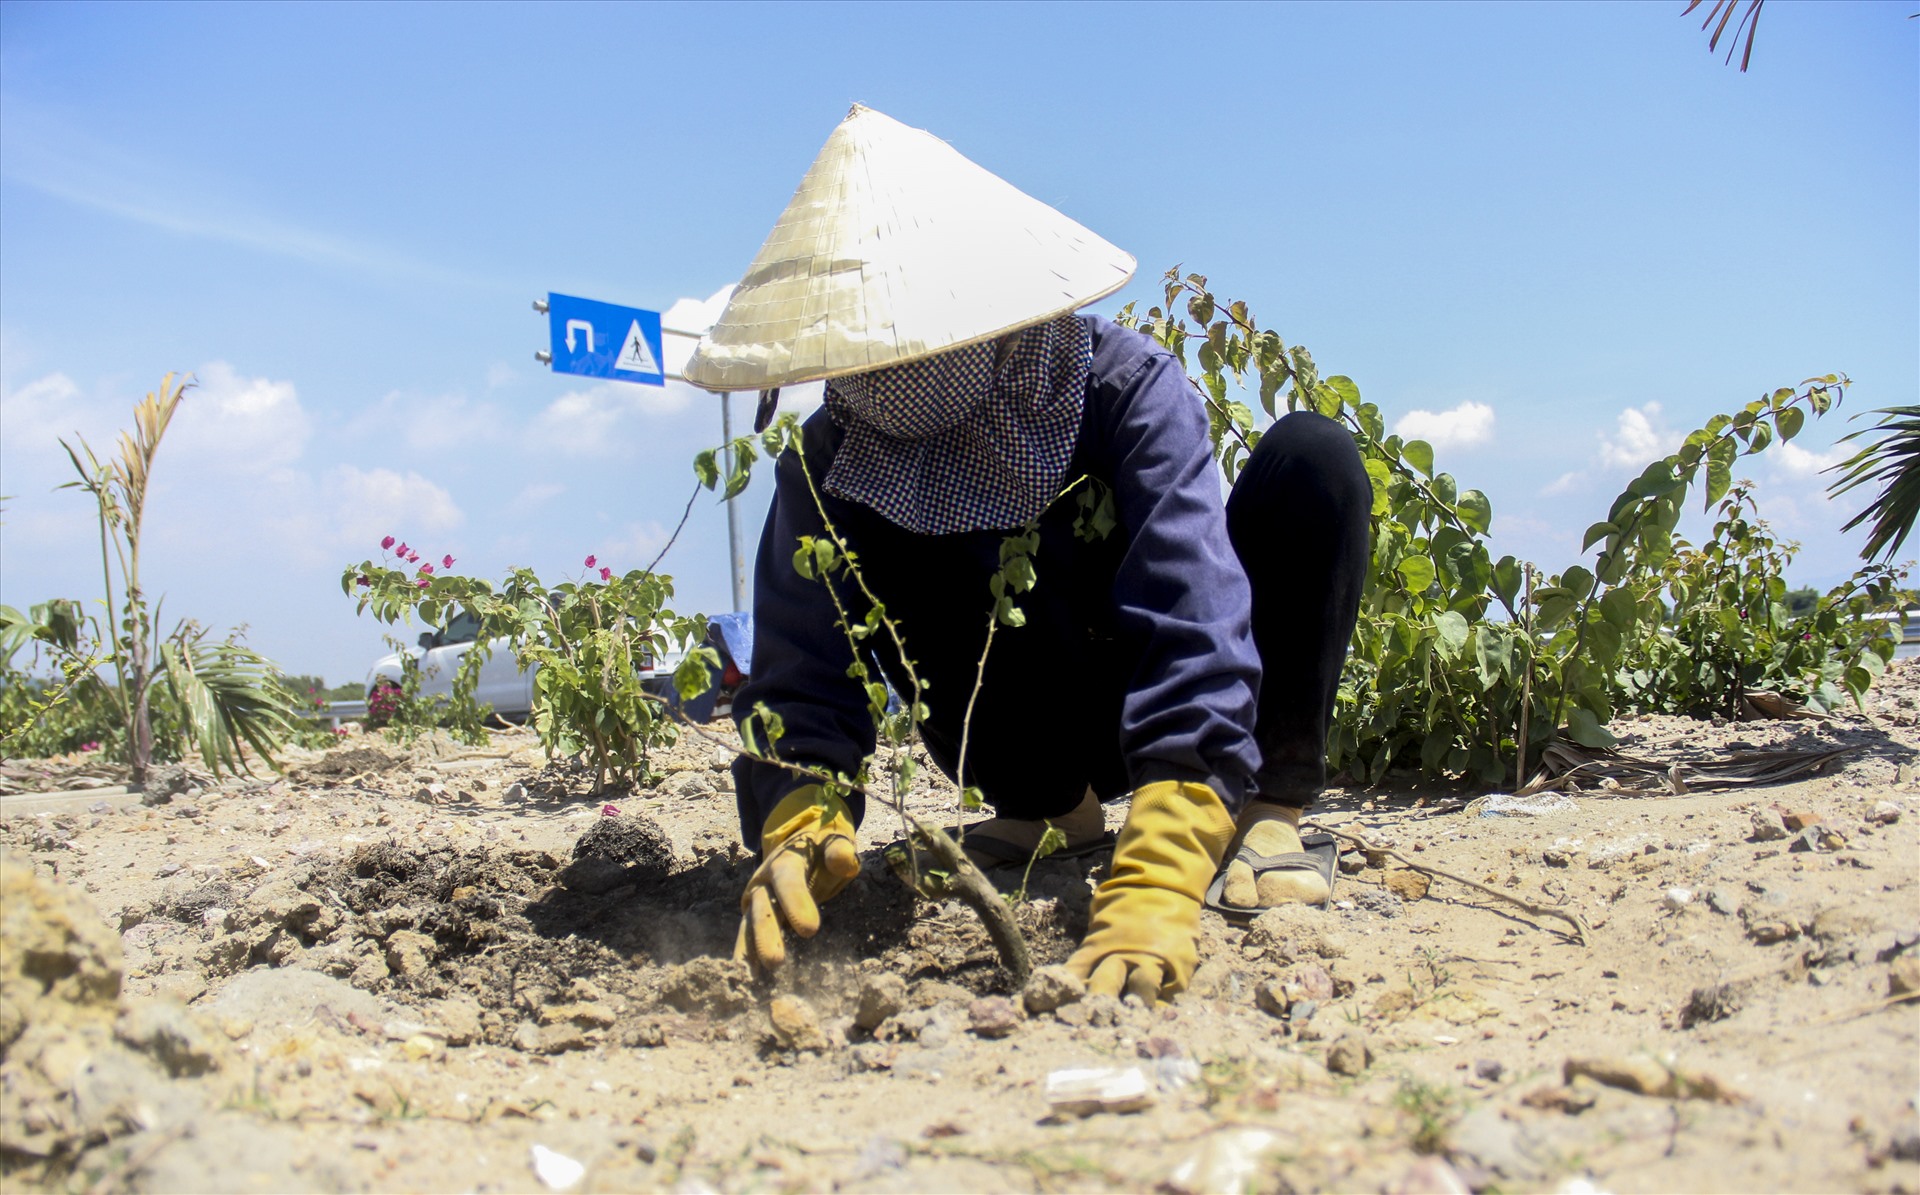 Bà Nguyễn Thị Hồng (56 tuổi, trú xã Phước Hưng, huyện Tuy Phước, tỉnh Bình Định) công nhân trồng hoa cho hay, tình trạng trộm hoa diễn ra ngay từ khi bắt đầu triển khai trồng hoa trên Quốc lộ 19 mới.